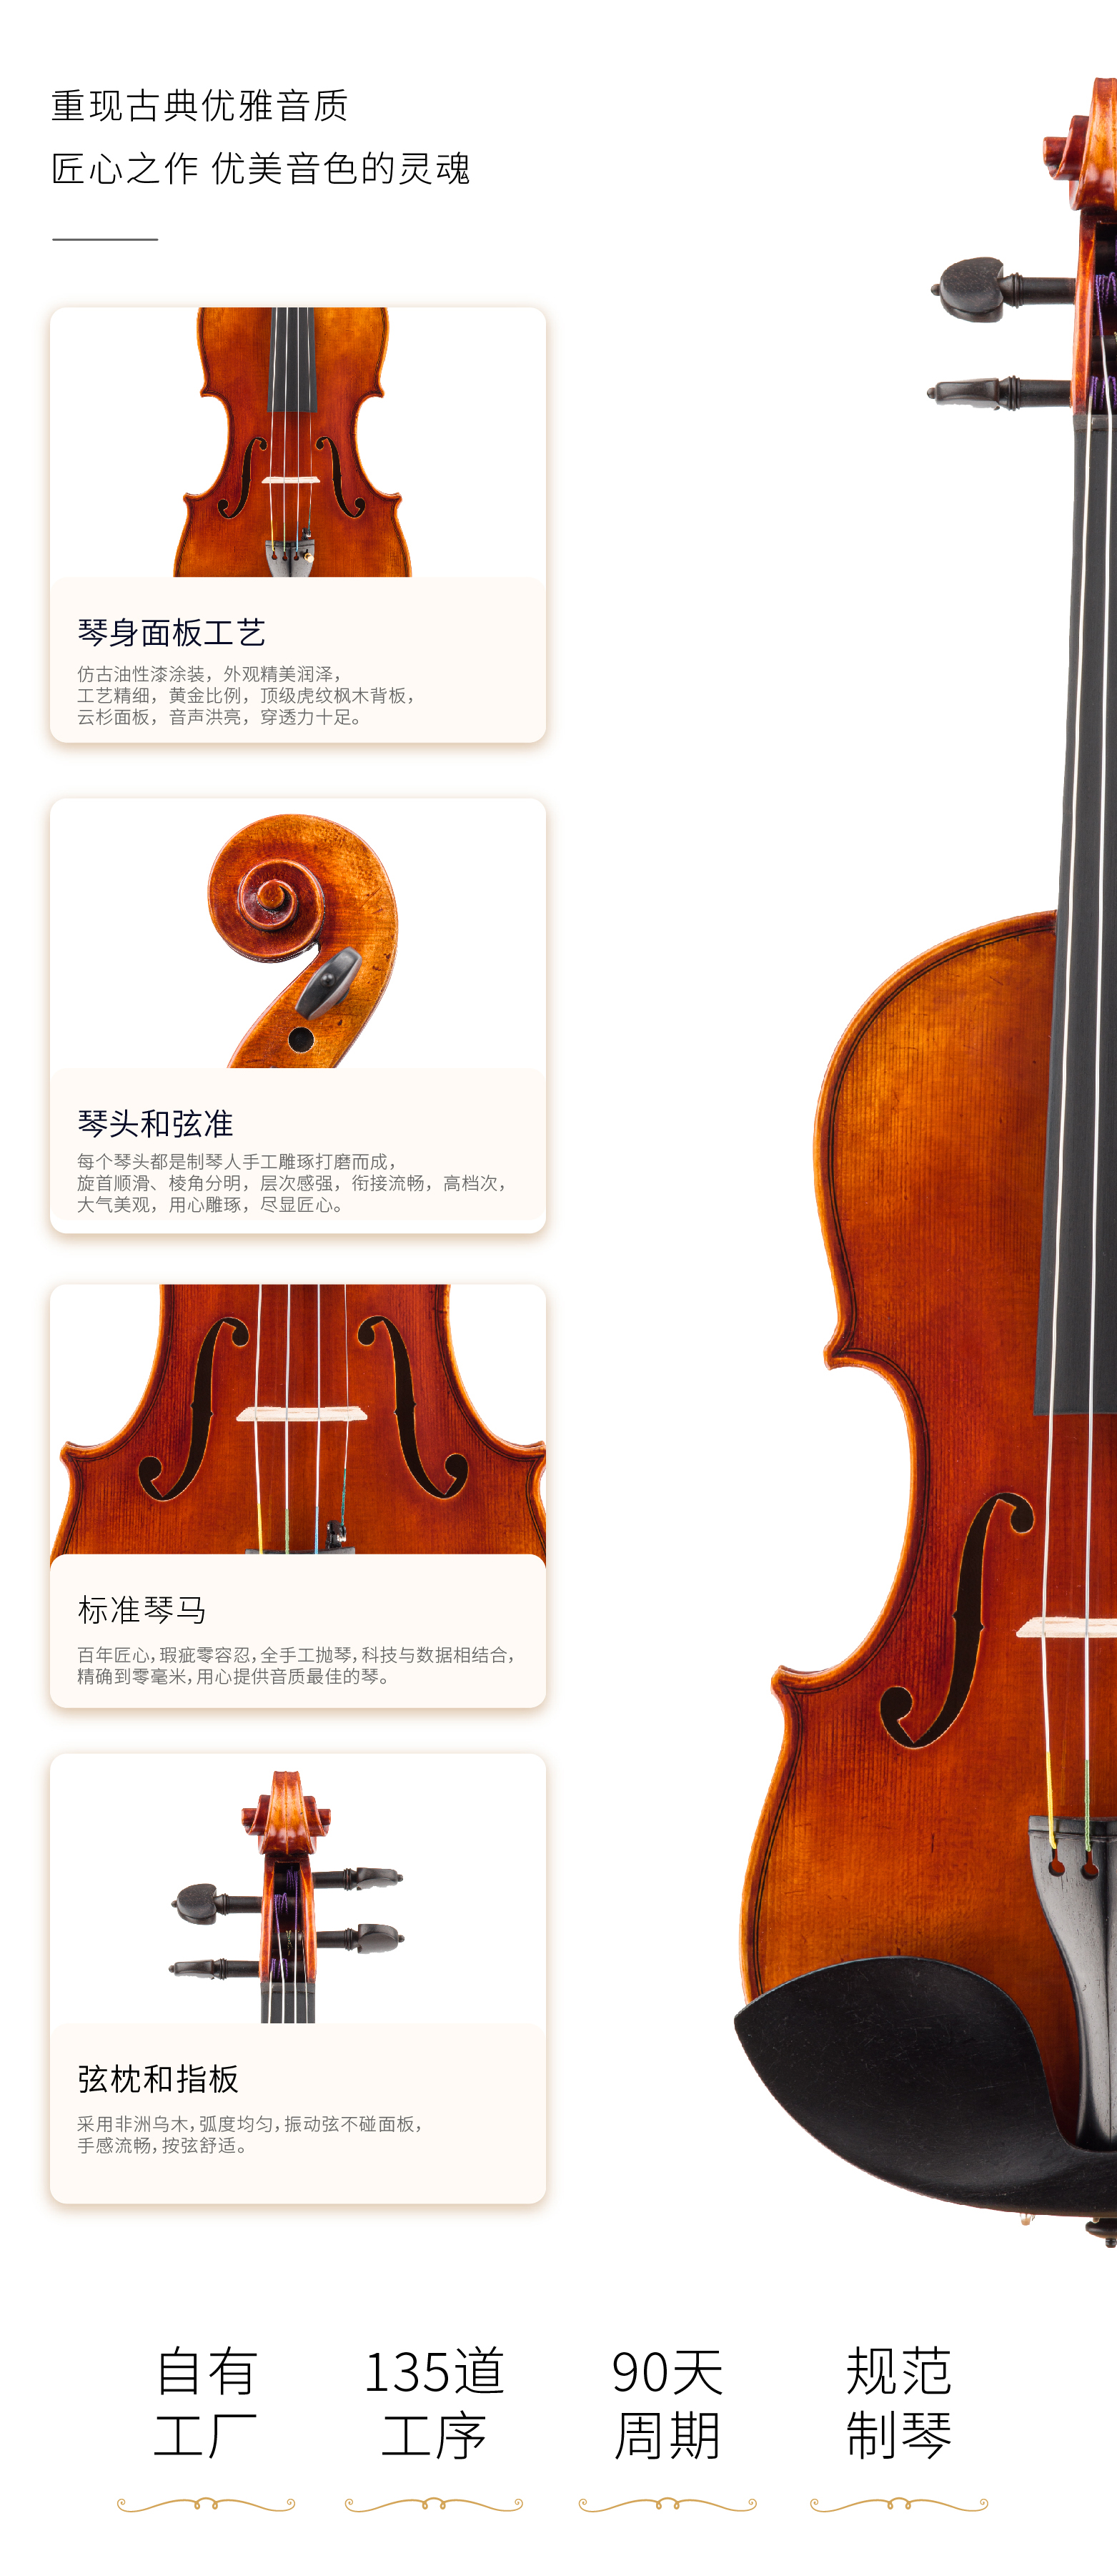 熙珑乐器专营店-详情-v1-2_SV880小提琴_07.jpg